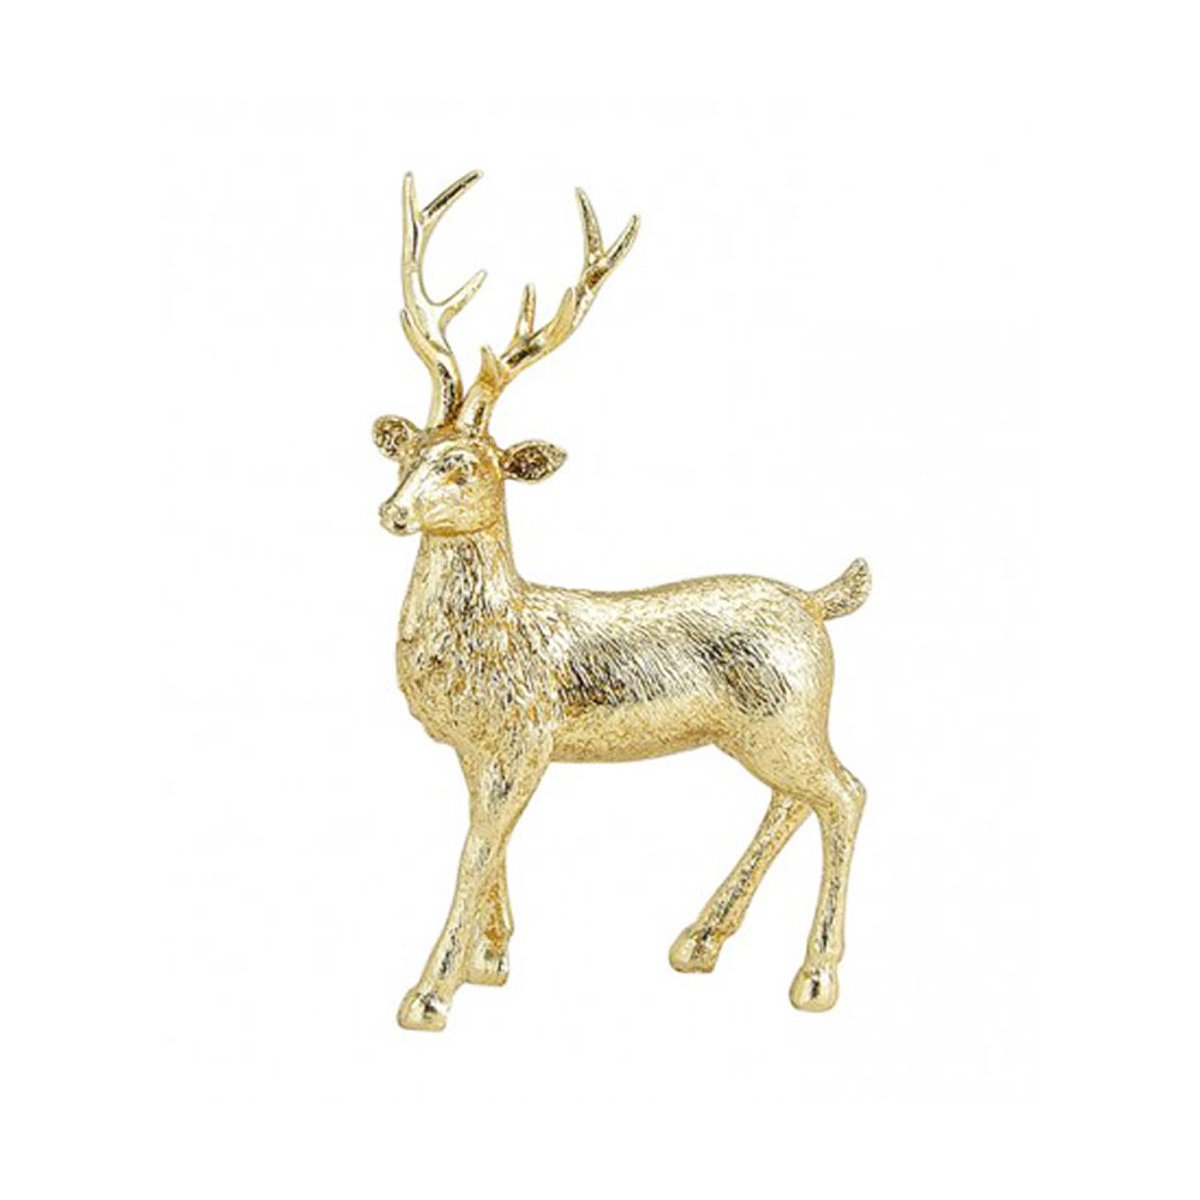 Hirsch gold 21x14 cm - De, Figur, Weihnachtsdekoration, € Deko 12,95 festliche